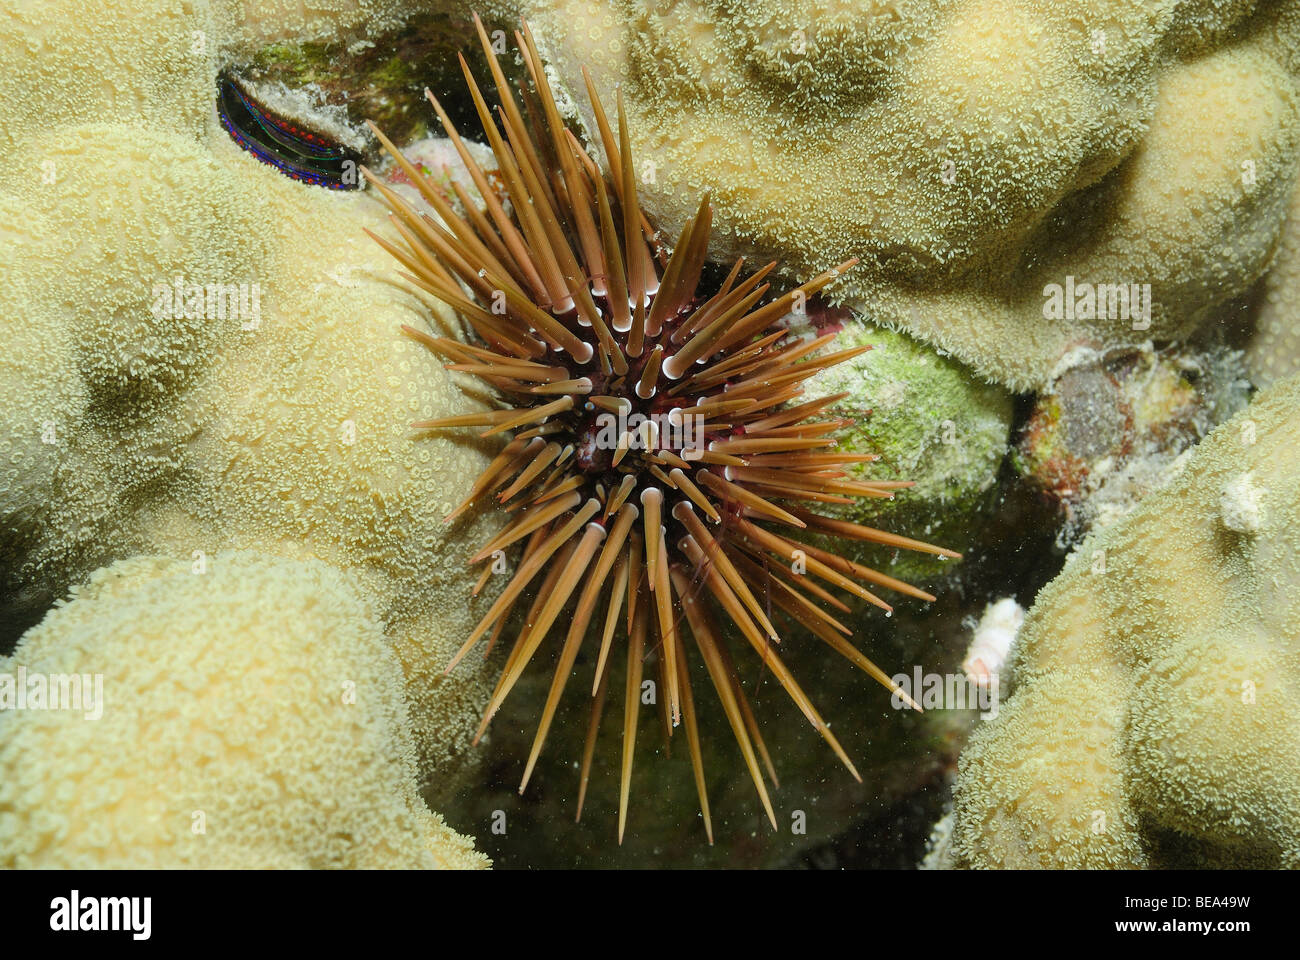 Sea urchin in Red Sea, Egypt Stock Photo